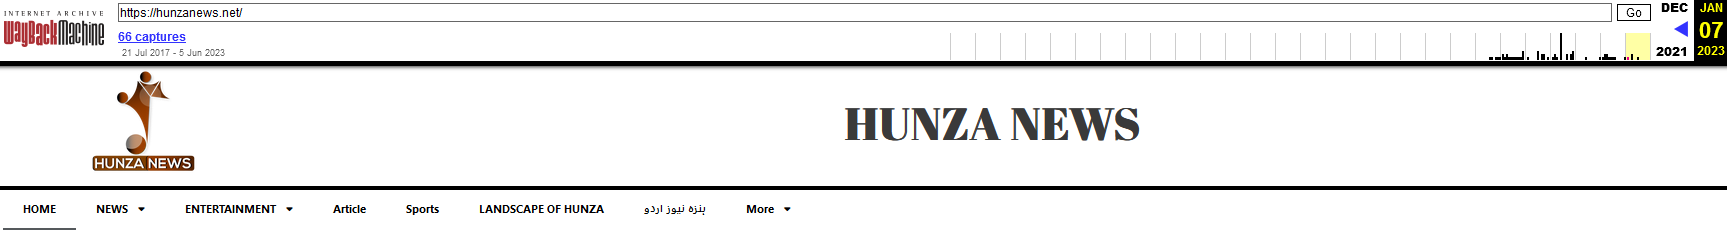 図 4 Hunza News の再設計、ダウンロード オプションなしのアプリ